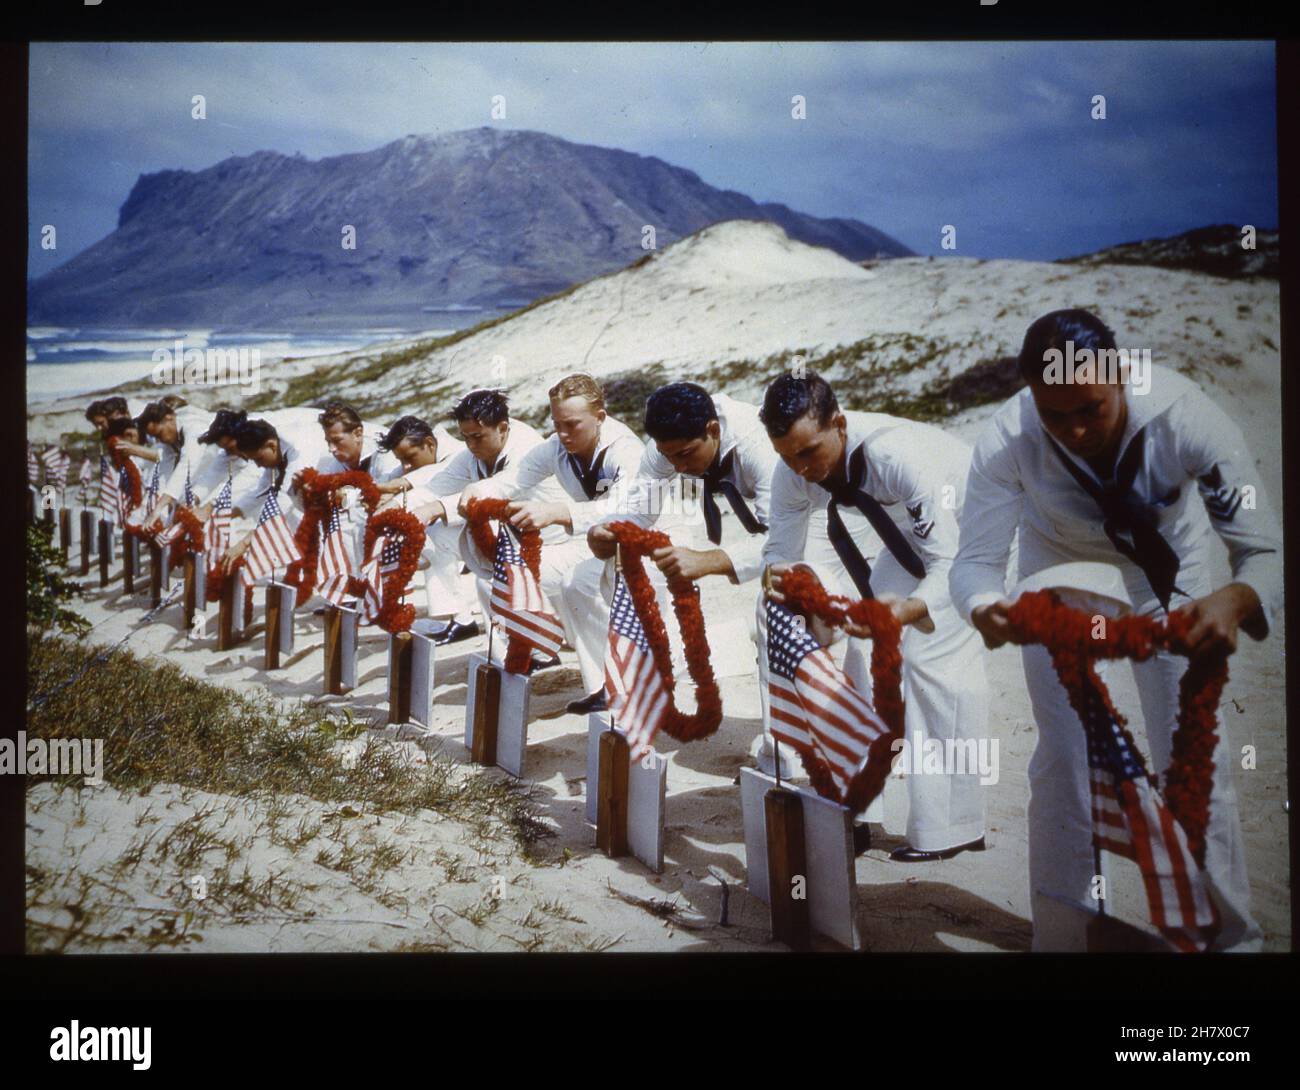 Isole Hawaii, Primavera 1942 -- Caption originale - 'nella tradizione hawaiana, i marinai rendono omaggio alle vittime dell'attacco di Pearl Harbor in un cimitero delle Isole hawaiane, circa Primavera 1942. Forse preso il Memorial Day." Foto di US Navy Foto Stock